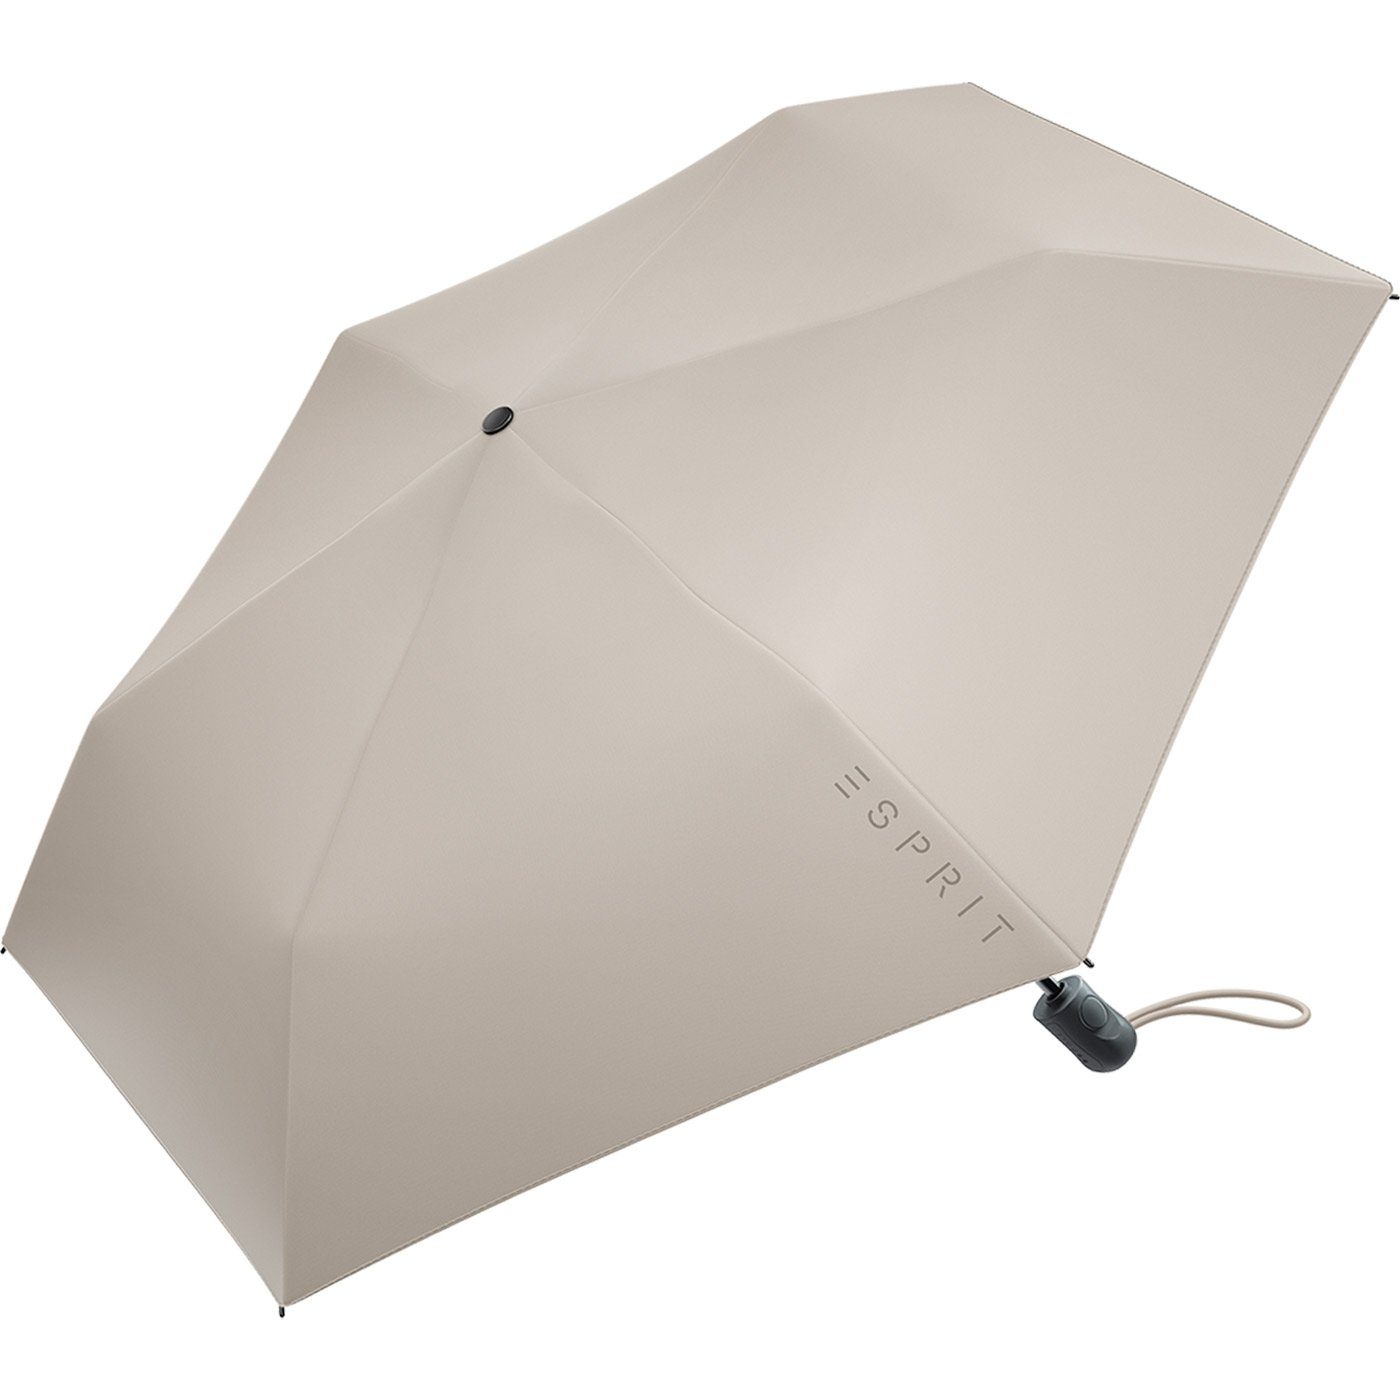 Esprit Taschenregenschirm Damen Easymatic Slimline und grau Automatik in stabil, leicht FJ 2022, Trendfarben den neuen Auf-Zu